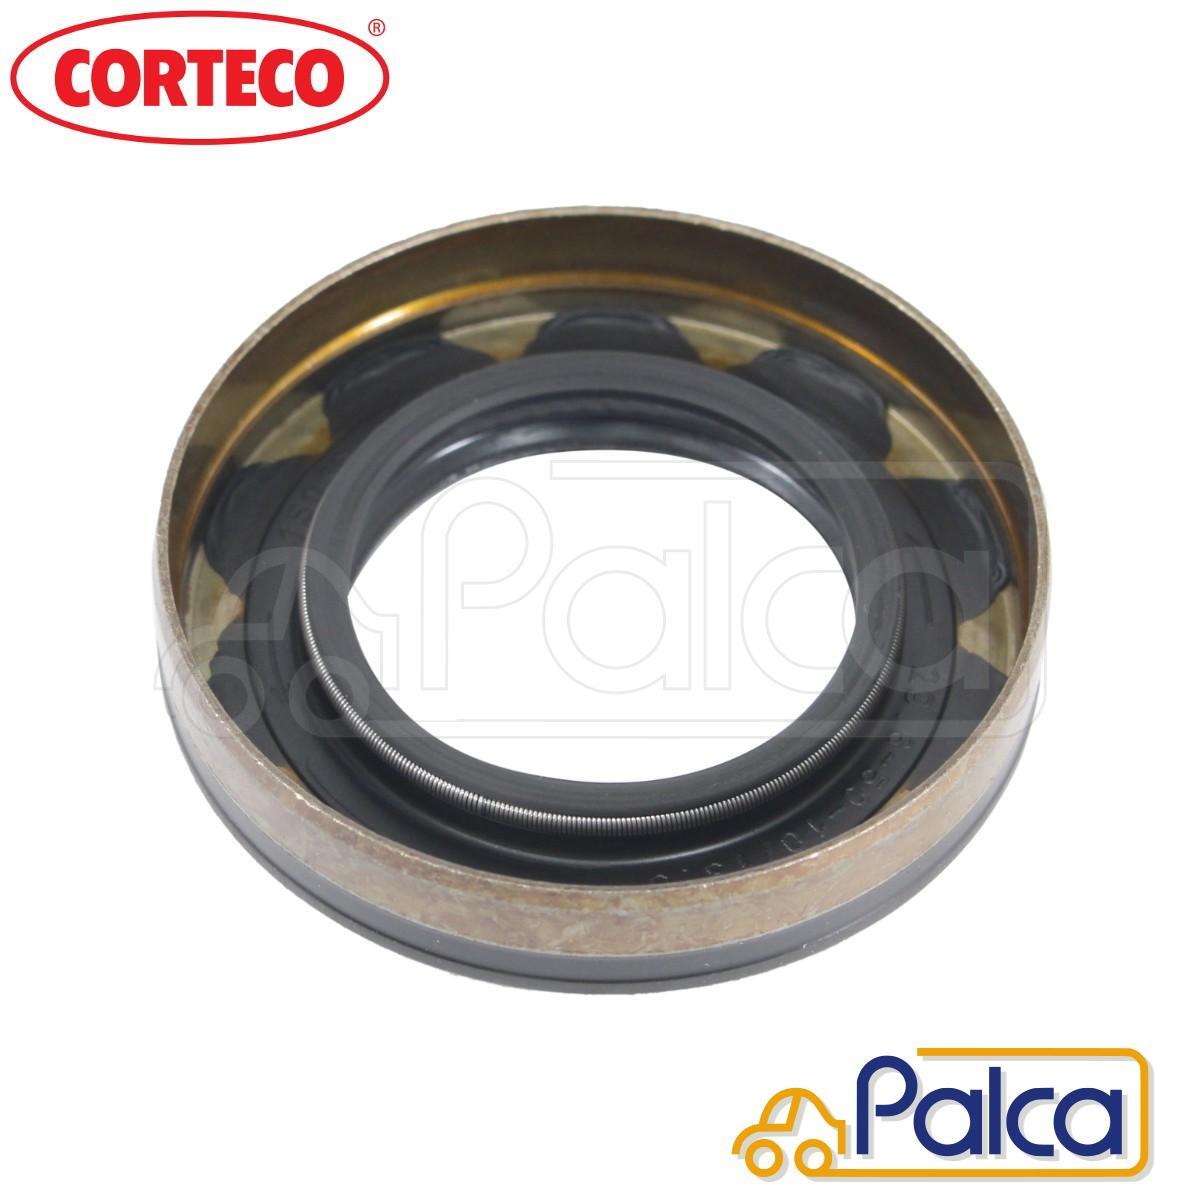  Lancia diff side seal right | Delta 1 | Thema 1 | CORTECO made 40004760 agreement 